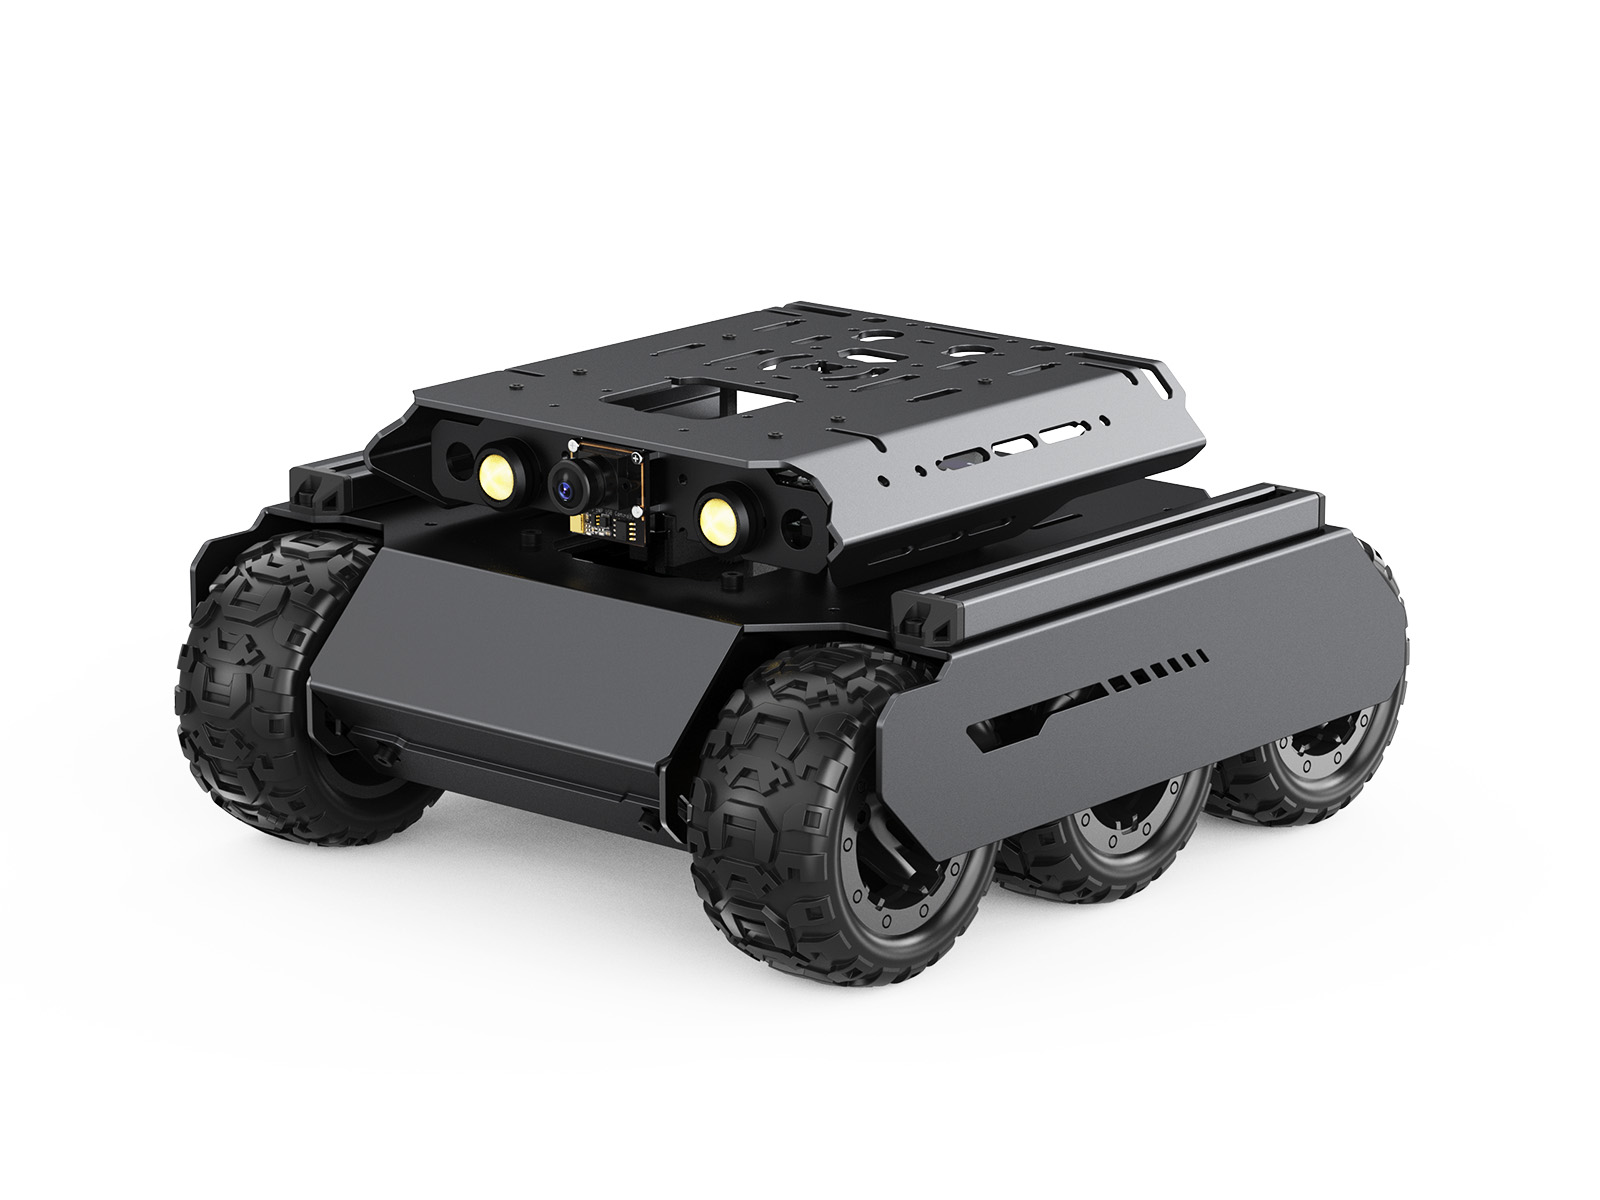 UGV Rover四驱六轮开源移动机器人 双脑架构 机器视觉 交互式教程 高性能灵活可扩展 金属架构 适用于树莓派5 不含云台